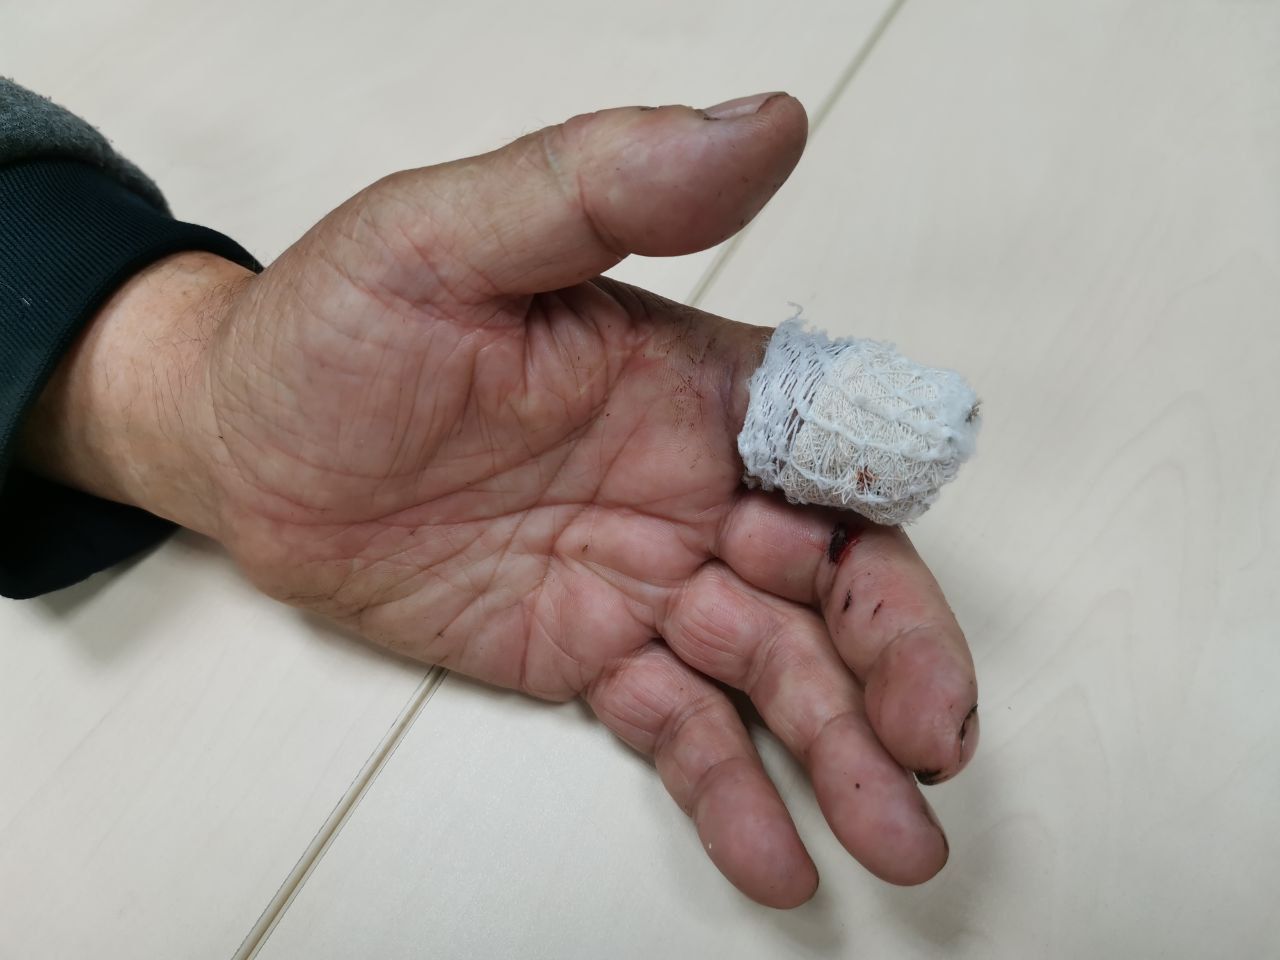 Серовчанин благодарит медиков за помощь. Мужчина случайно отрезал себе палец